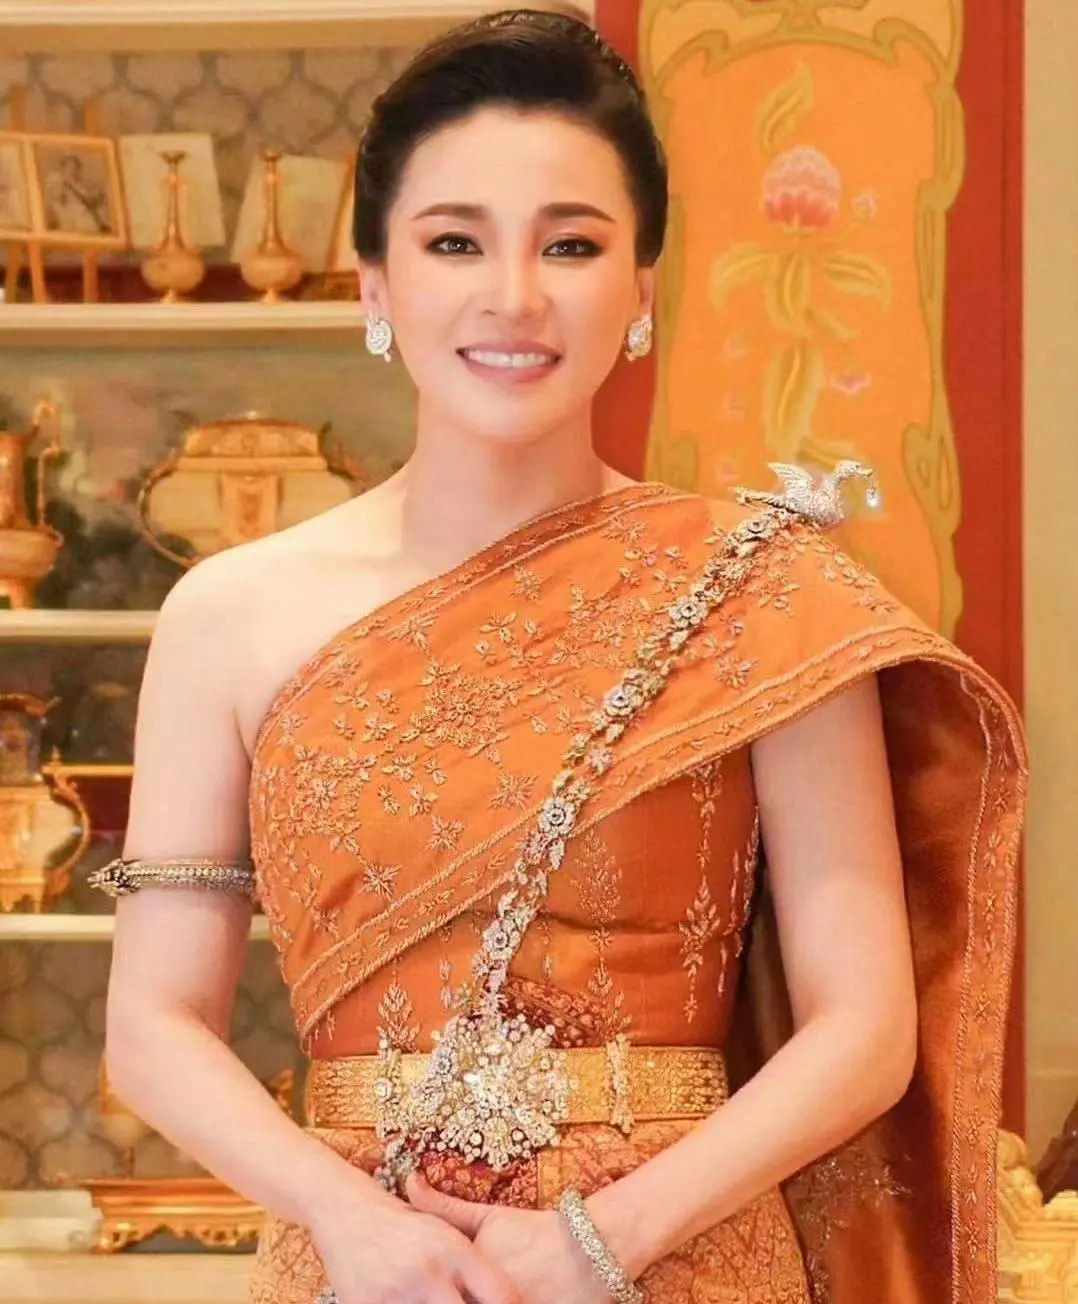 Hoàng hậu Thái Lan hiện tại: Nhan sắc U50 vẫn tỏa sáng và nhận được nhiều lời khen, mỗi lần xuất hiện đều nổi bần bật- Ảnh 1.